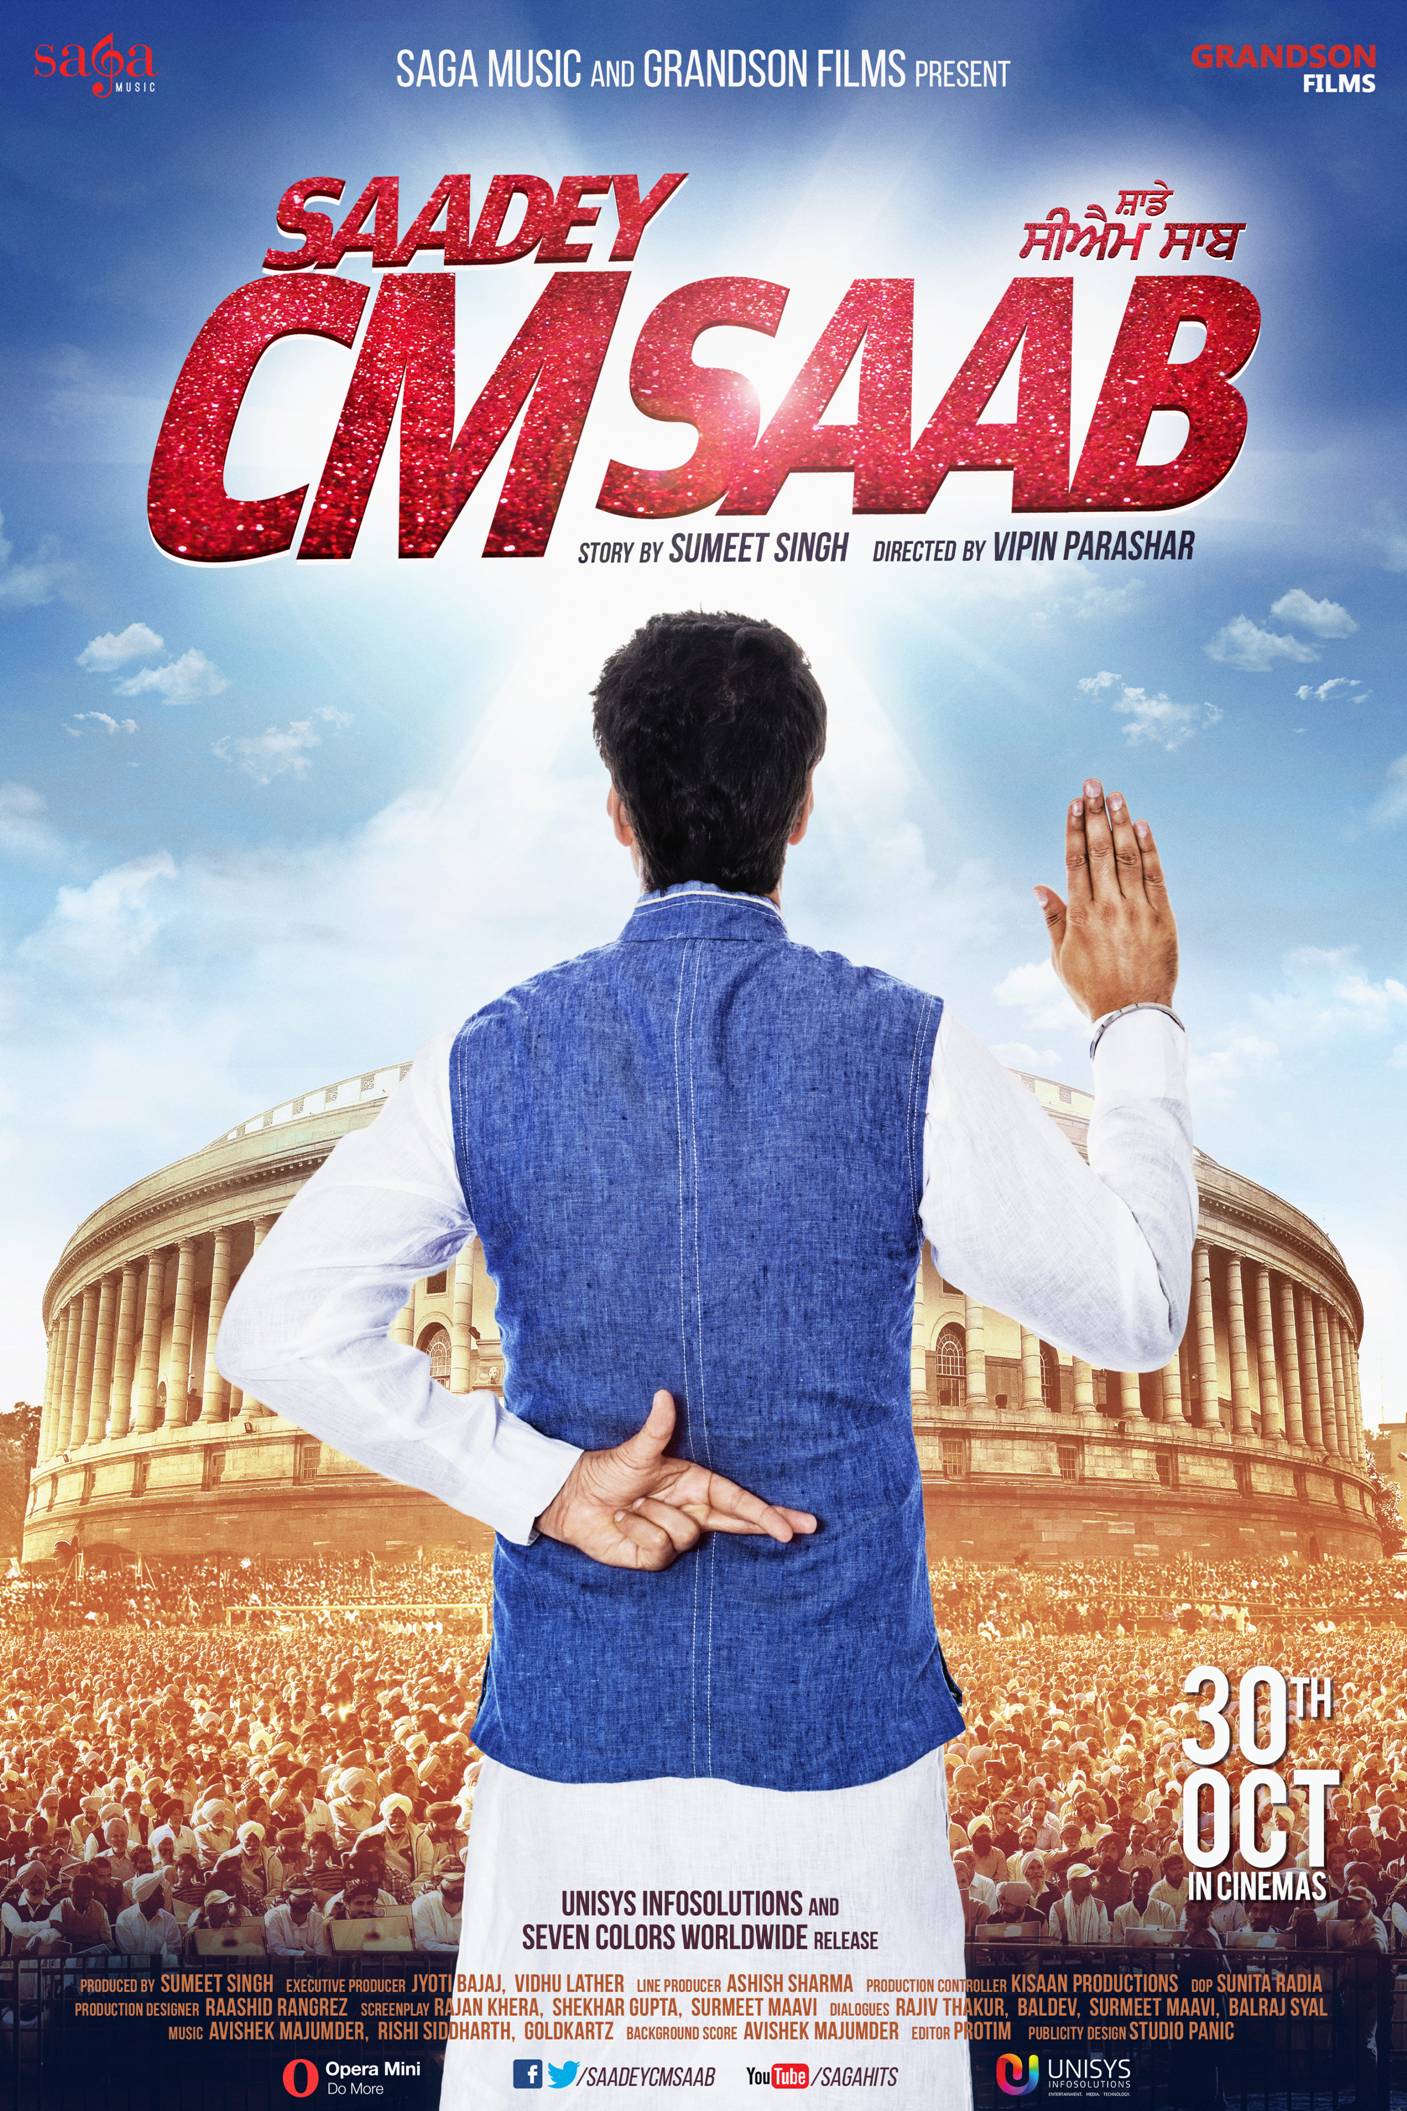 First Look Poster Released of Harbhajan Mann's Movie 'Saadey CM Saab'